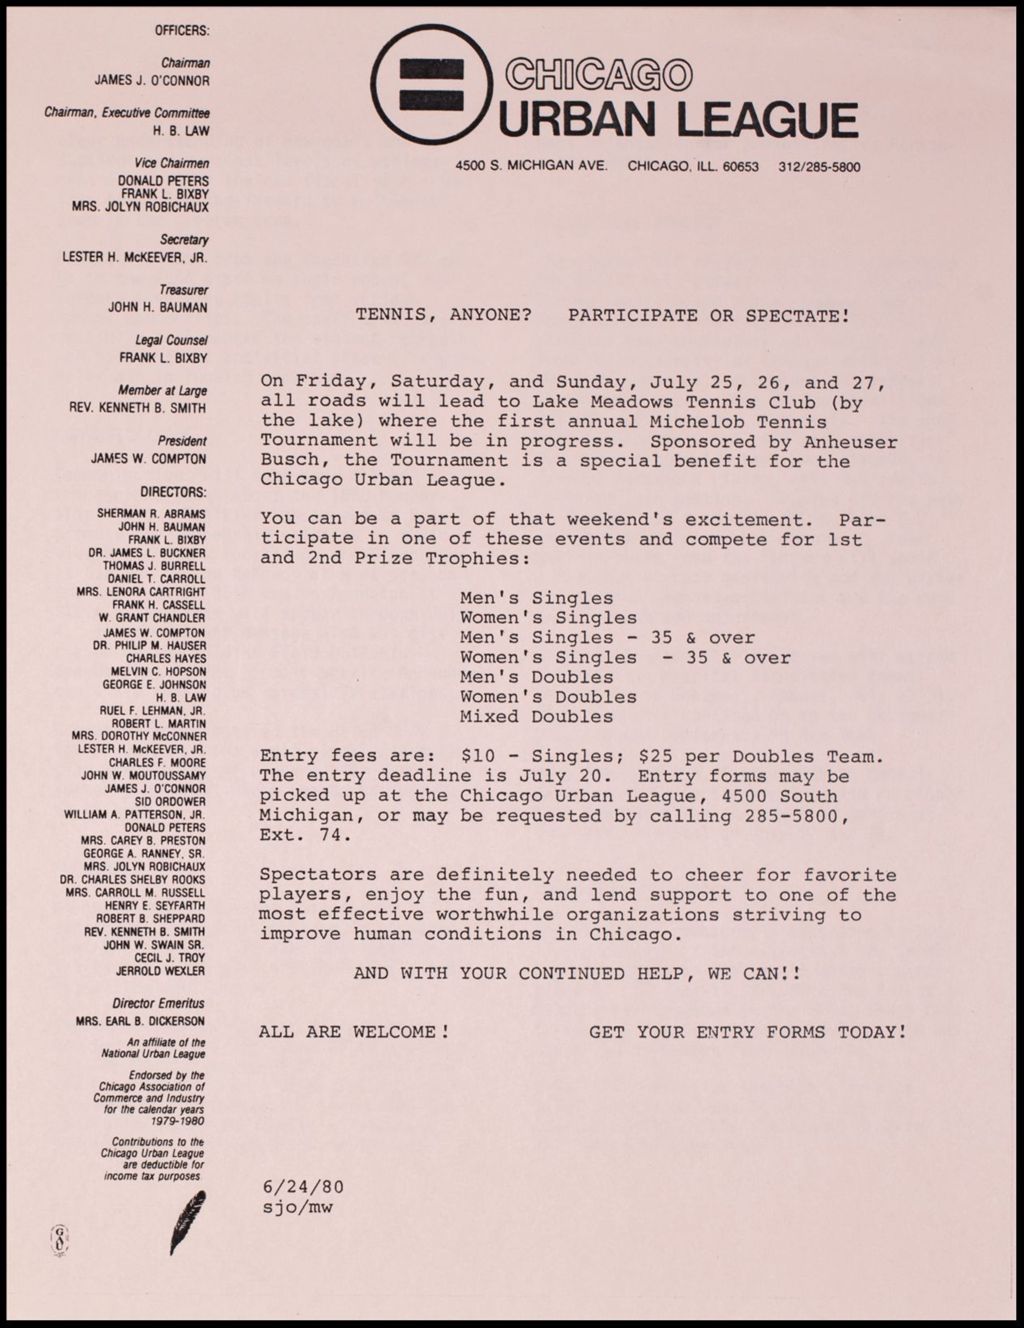 Miniature of CUL Employee Newsletter "Just Between Us", 1980 (Folder IV-738)